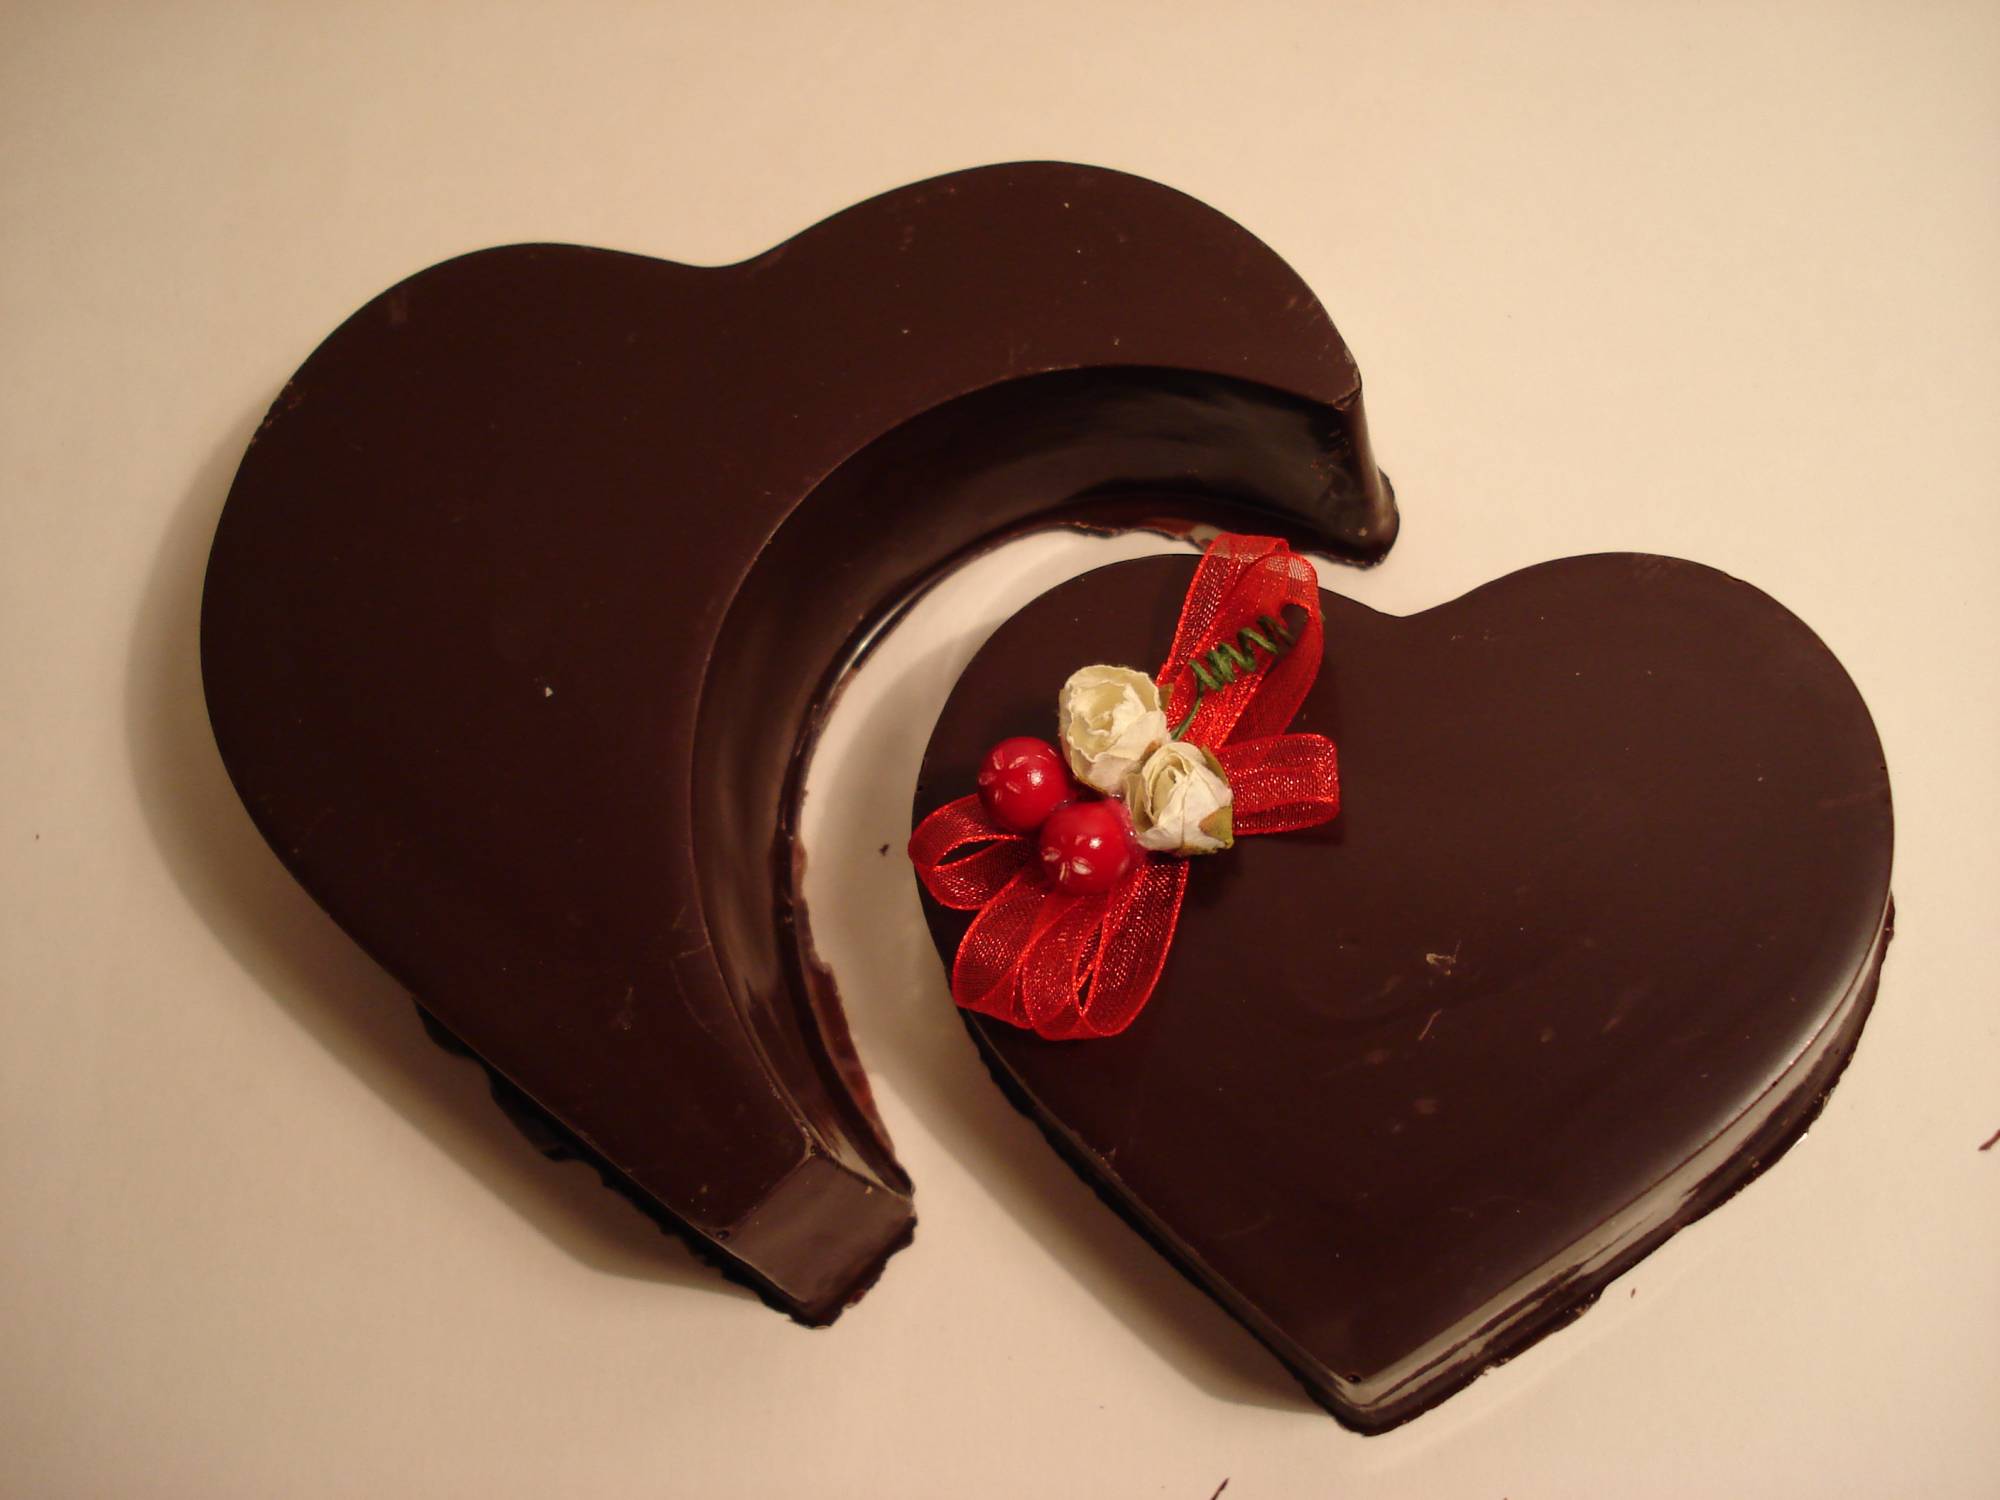 Pour tous les amoureux penser au chocolat pour la Saint Valentin!